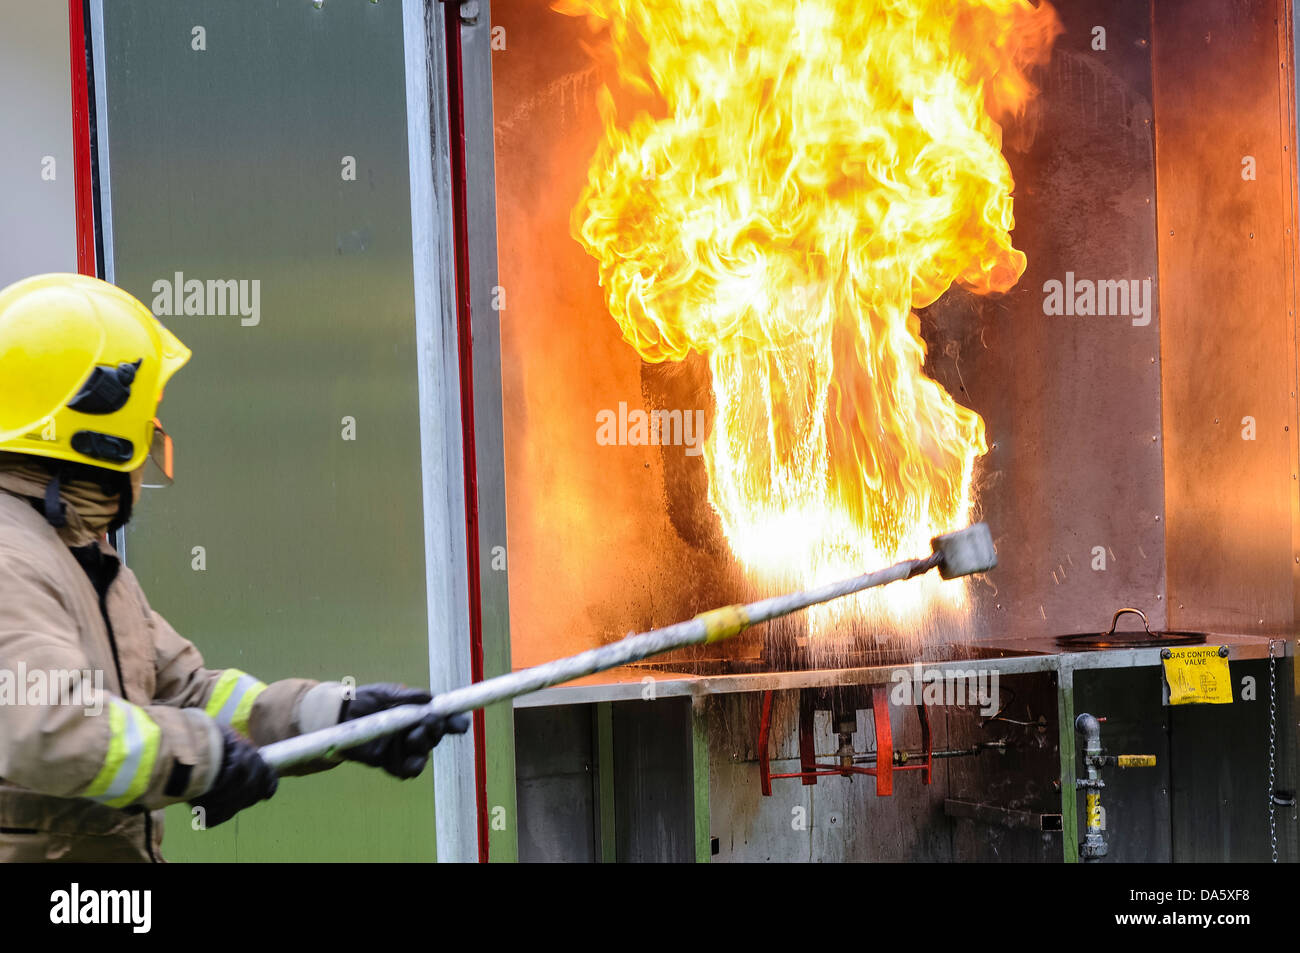 Ein Feuerwehrmann zeigt das Ergebnis von Gießen eine kleine Menge Wasser auf einem brennenden Spänewanne in einer kontrollierten Umgebung Stockfoto